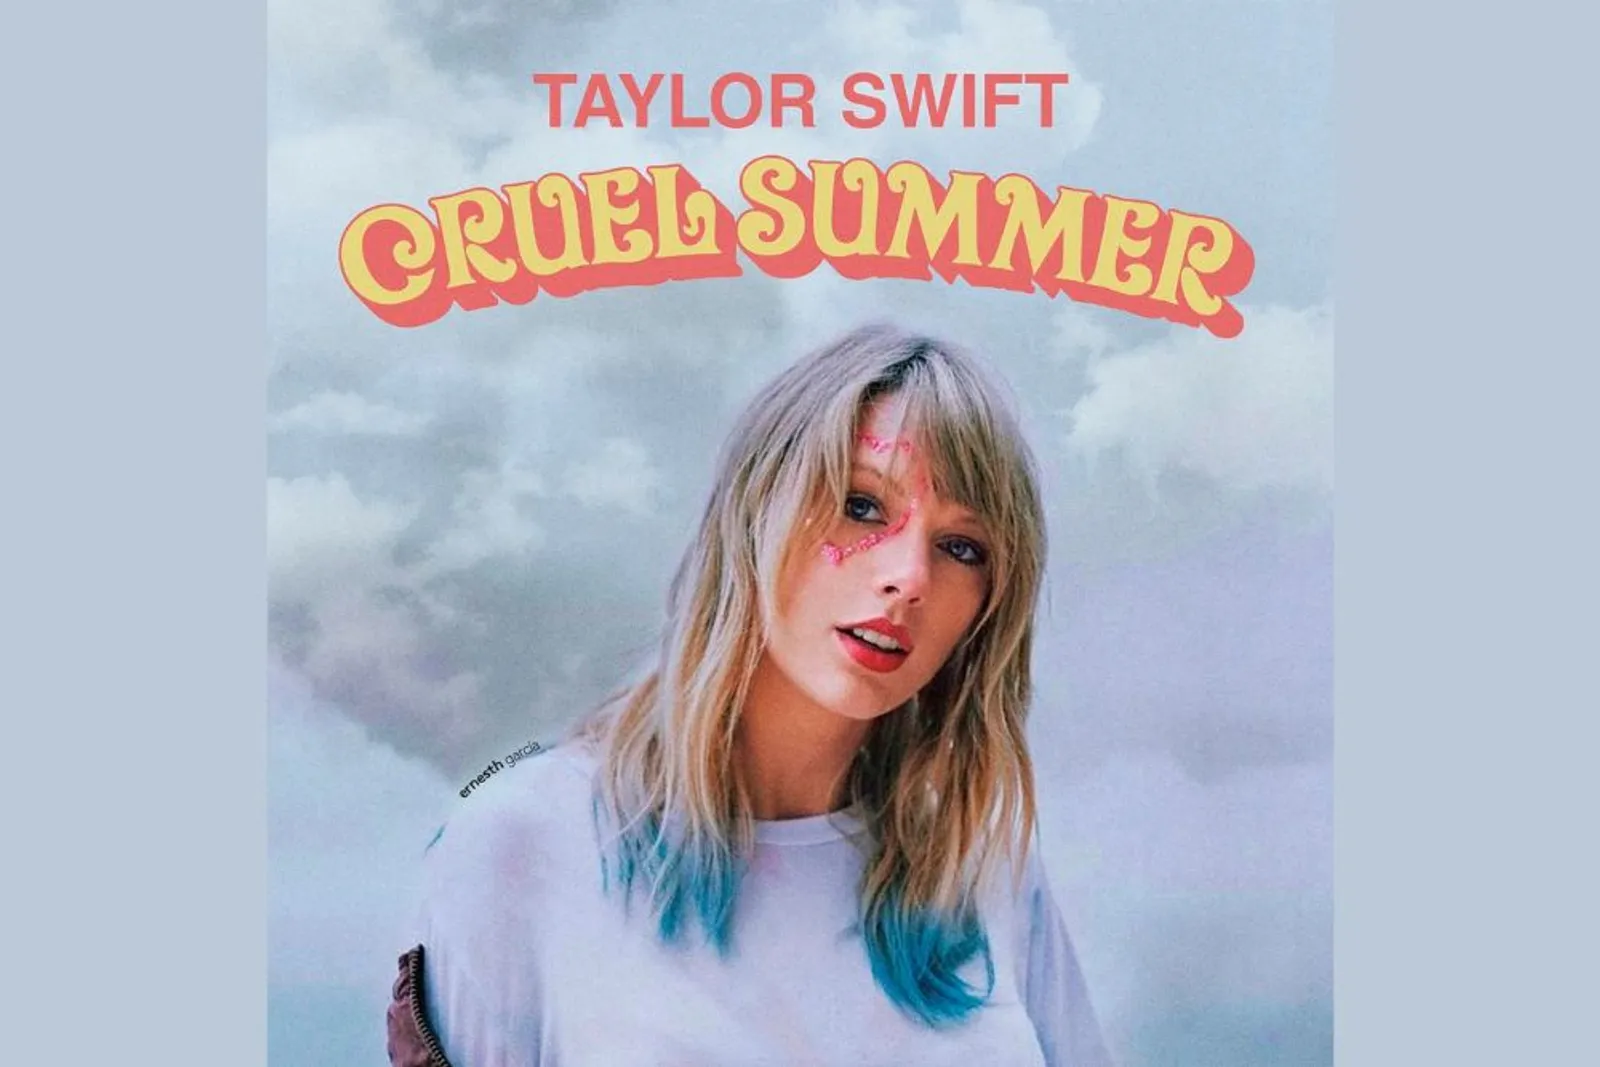 Makna Lagu "Cruel Summer" Taylor Swift, Romansa di Musim Panas